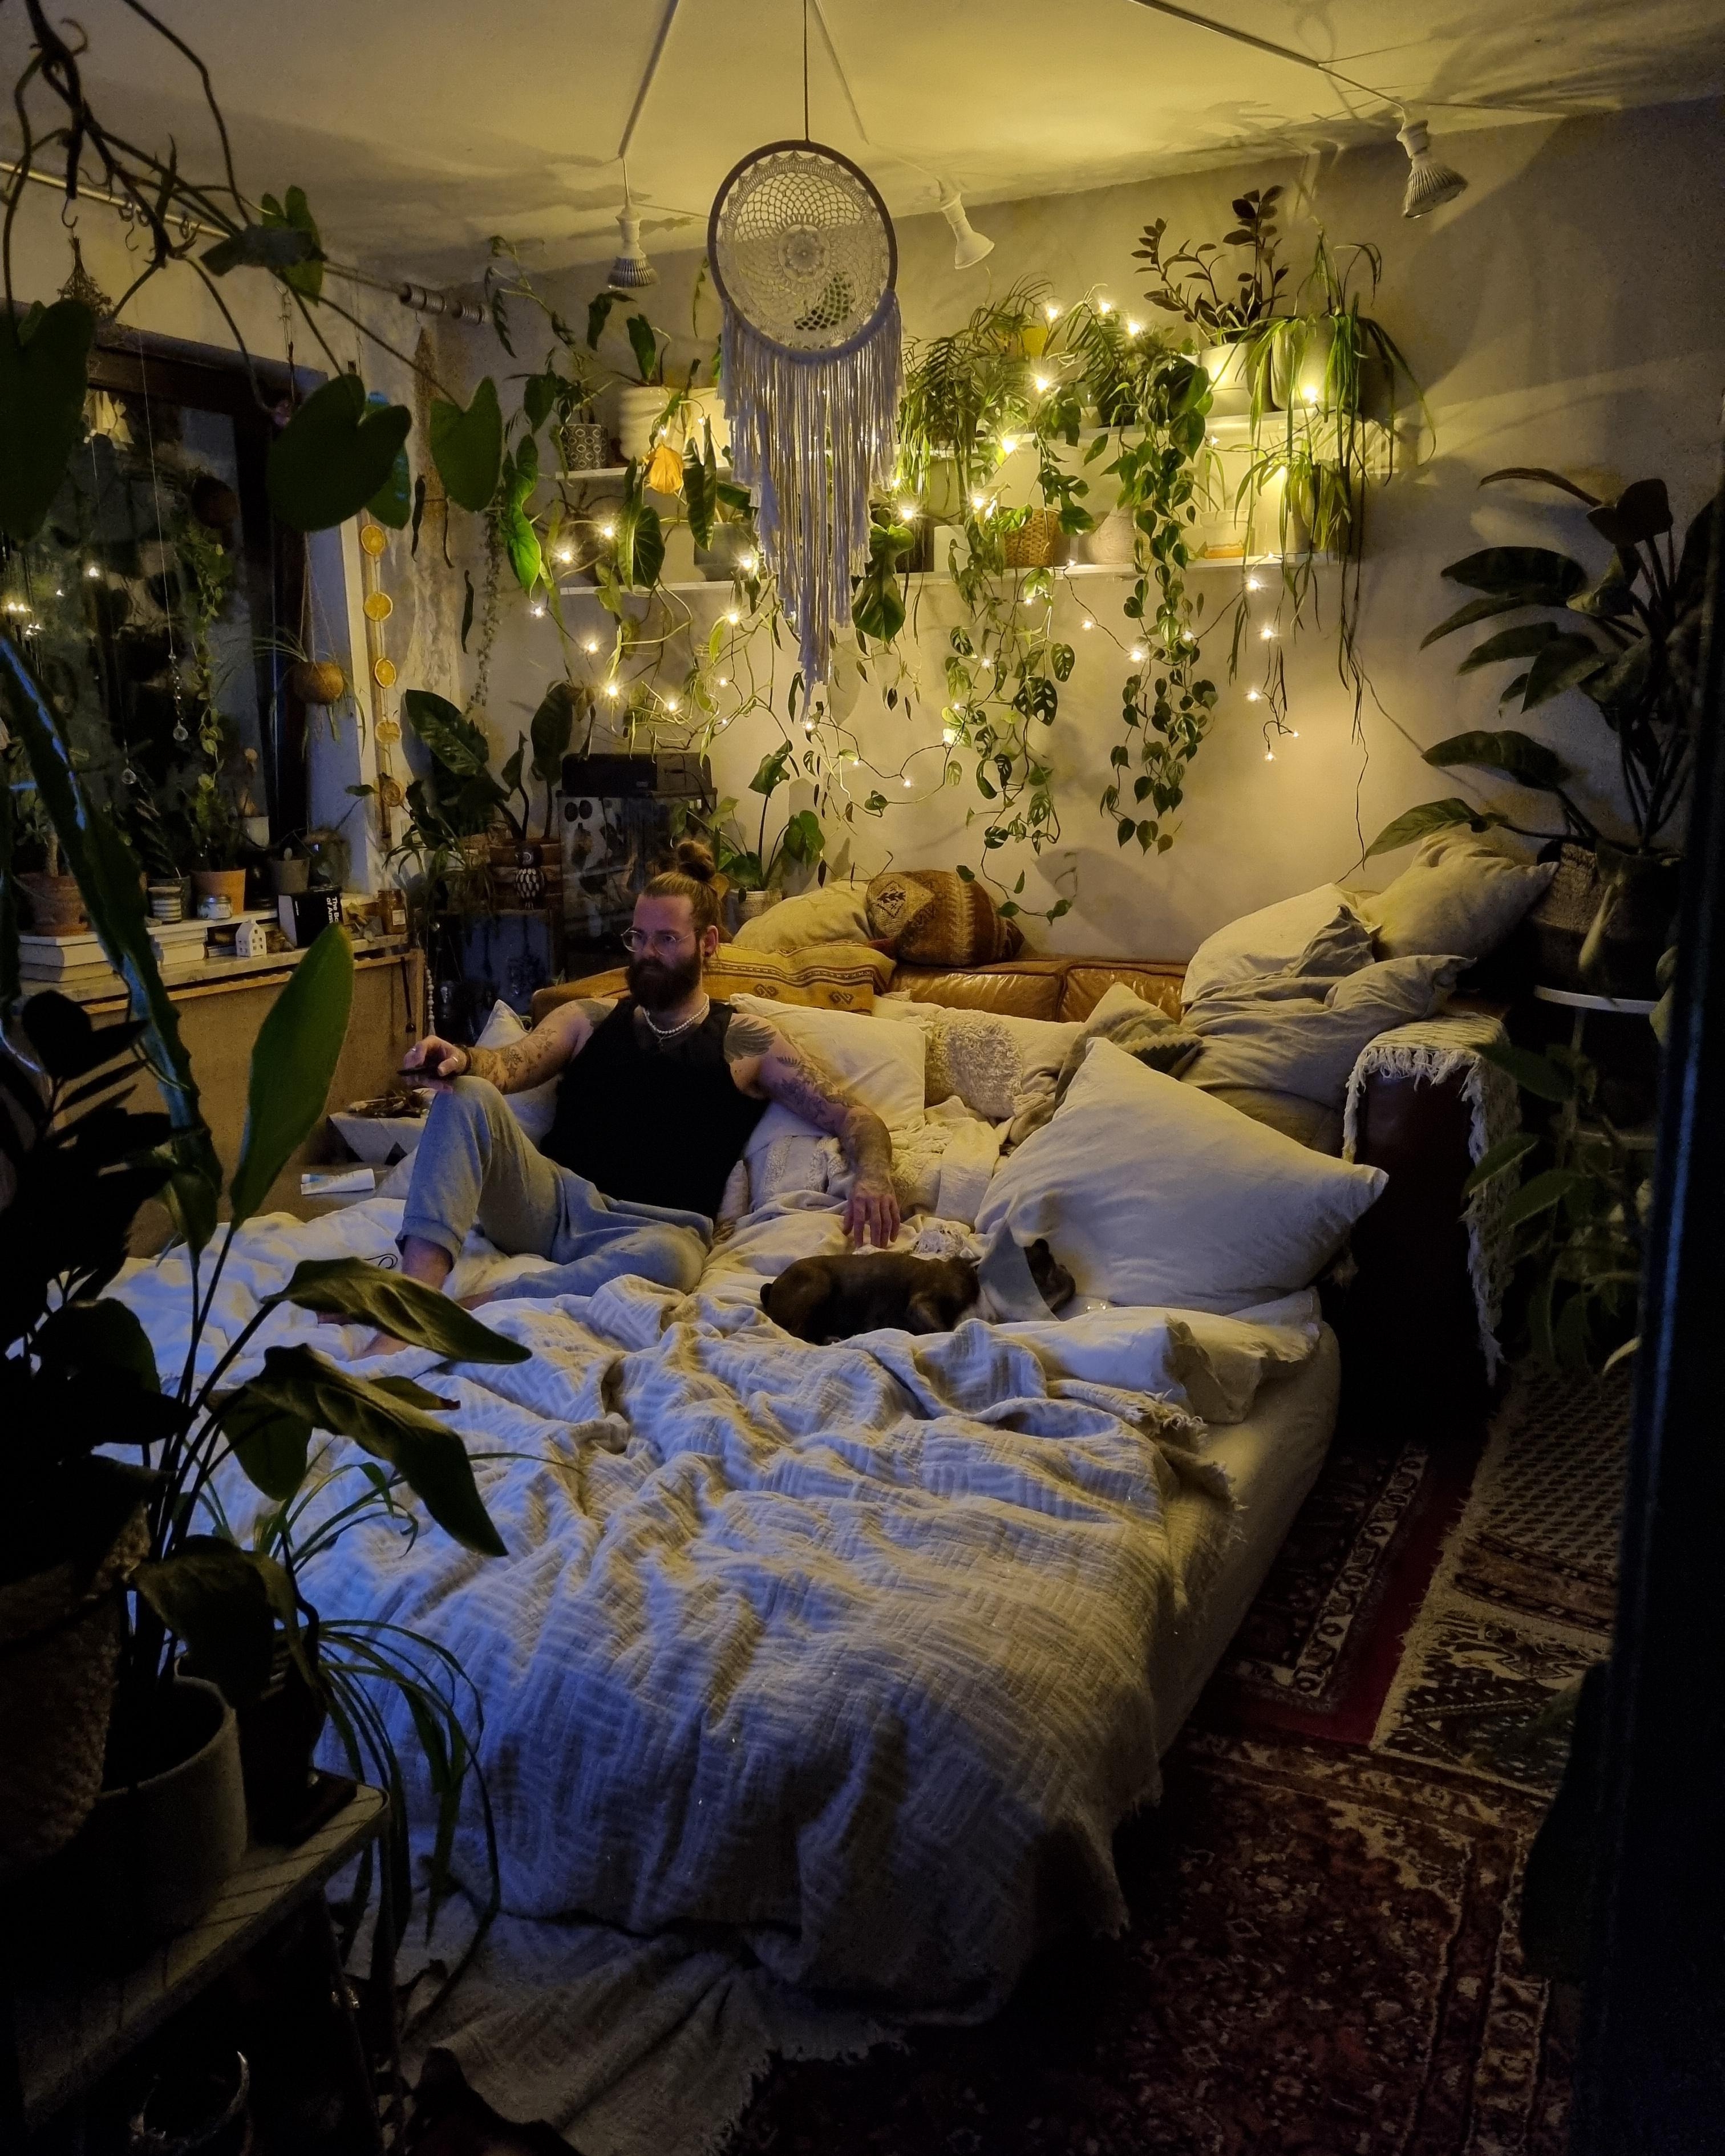 Langes Wochenende ✌🏼 #Wohnzimmer #Wohnung #Einrichtung #Pflanzen #Lichter #hygge #boho #hippie #Sofa #Couch #couchstyle